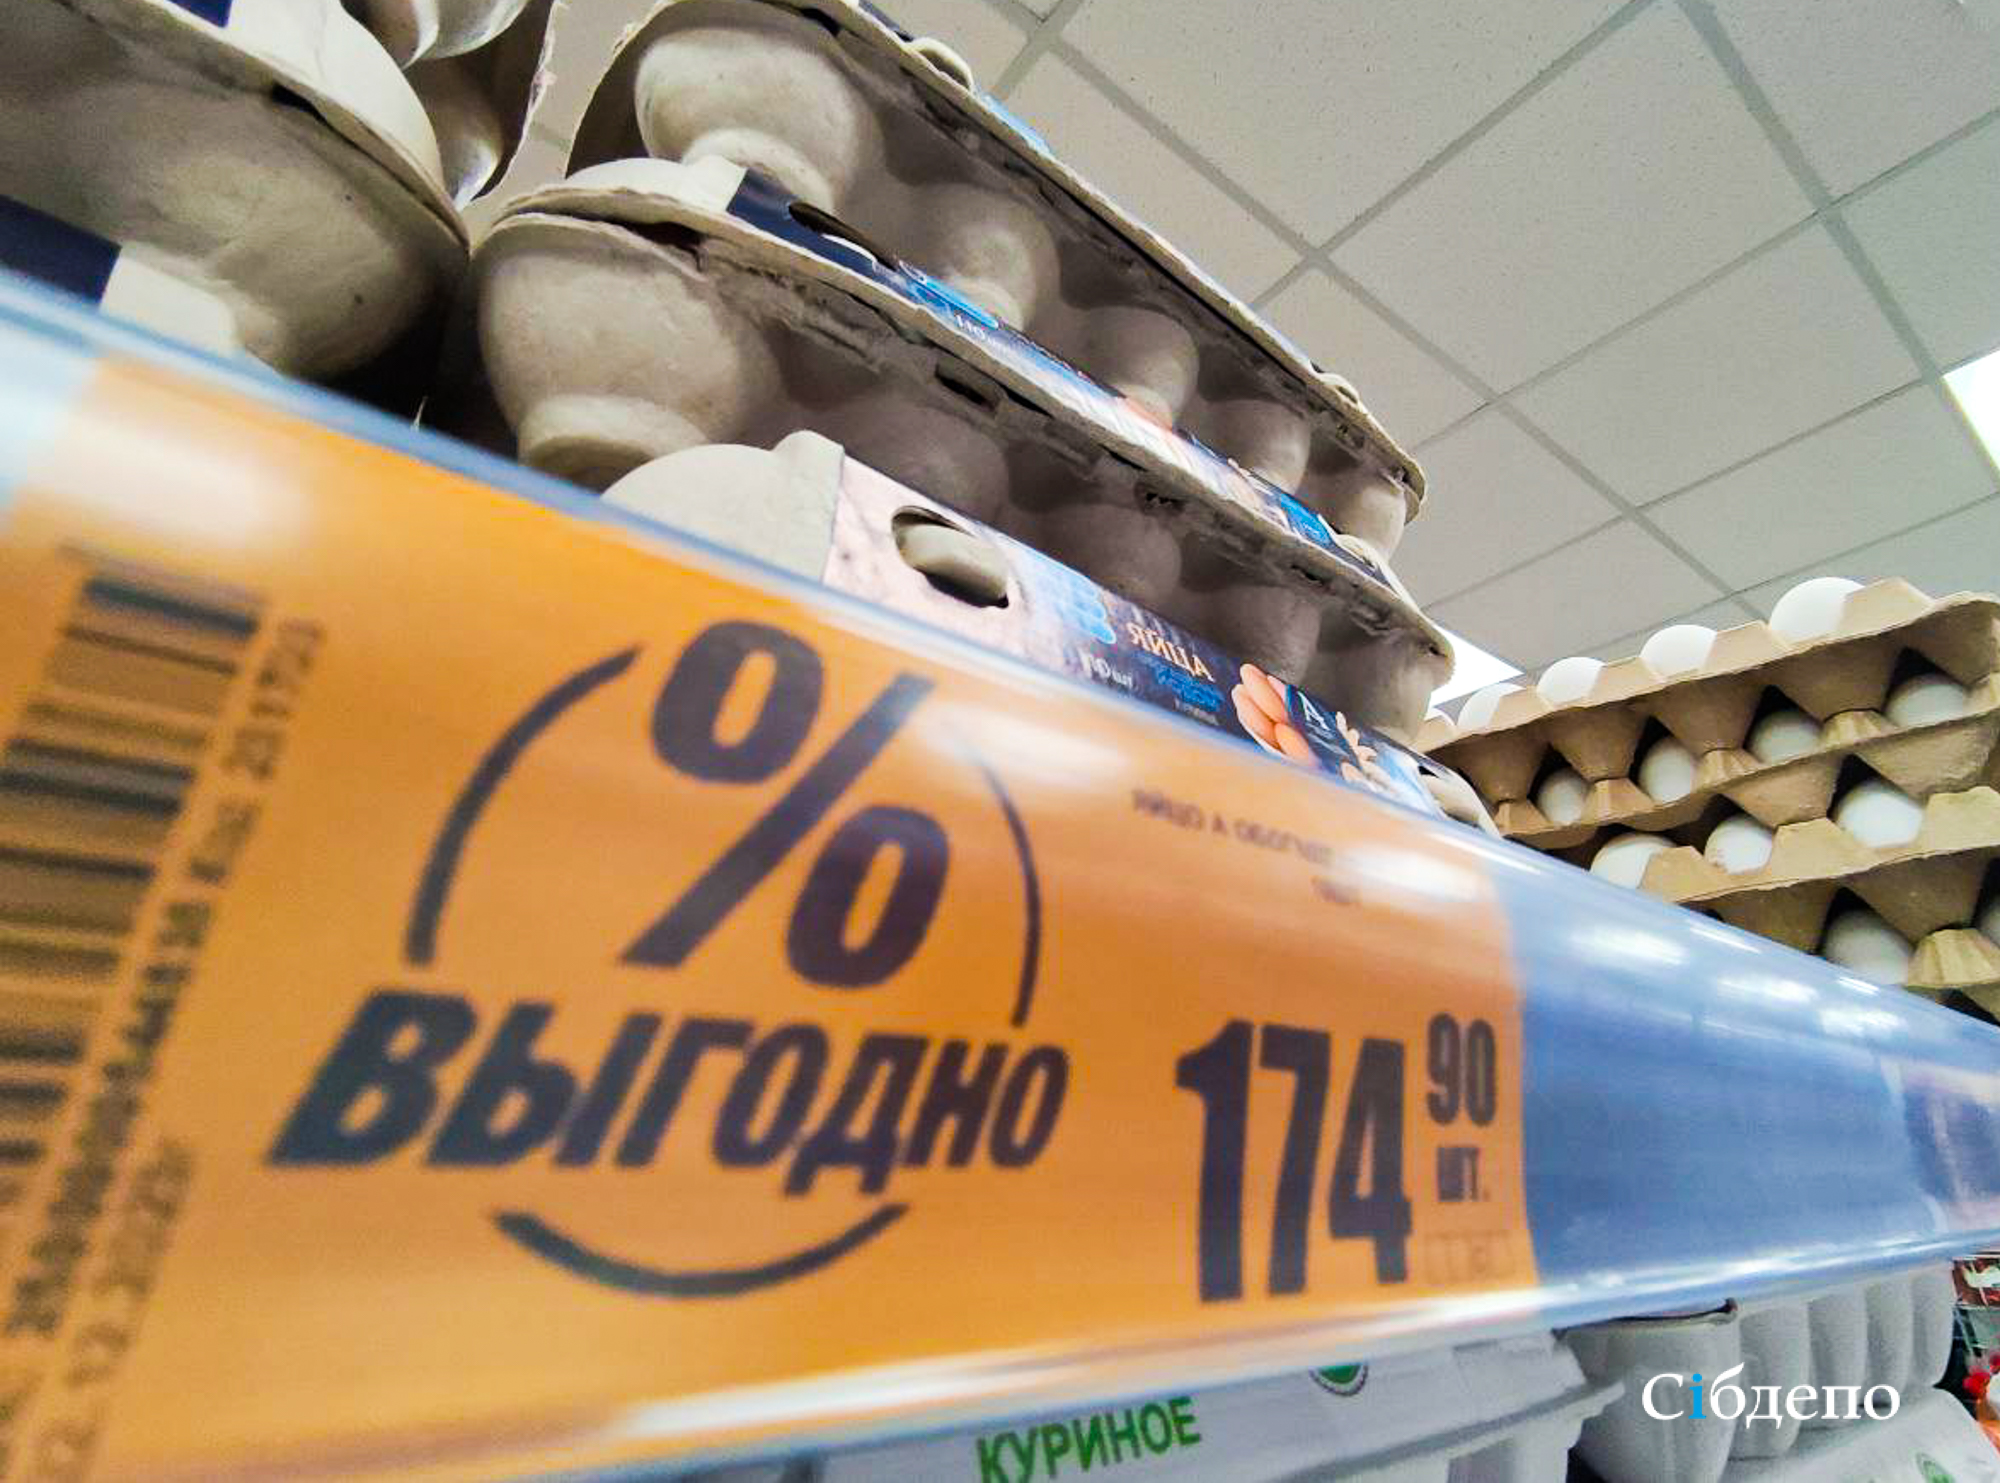 «Дешевле не станет»: в Росптицесоюзе назвали адекватную цену на яйца